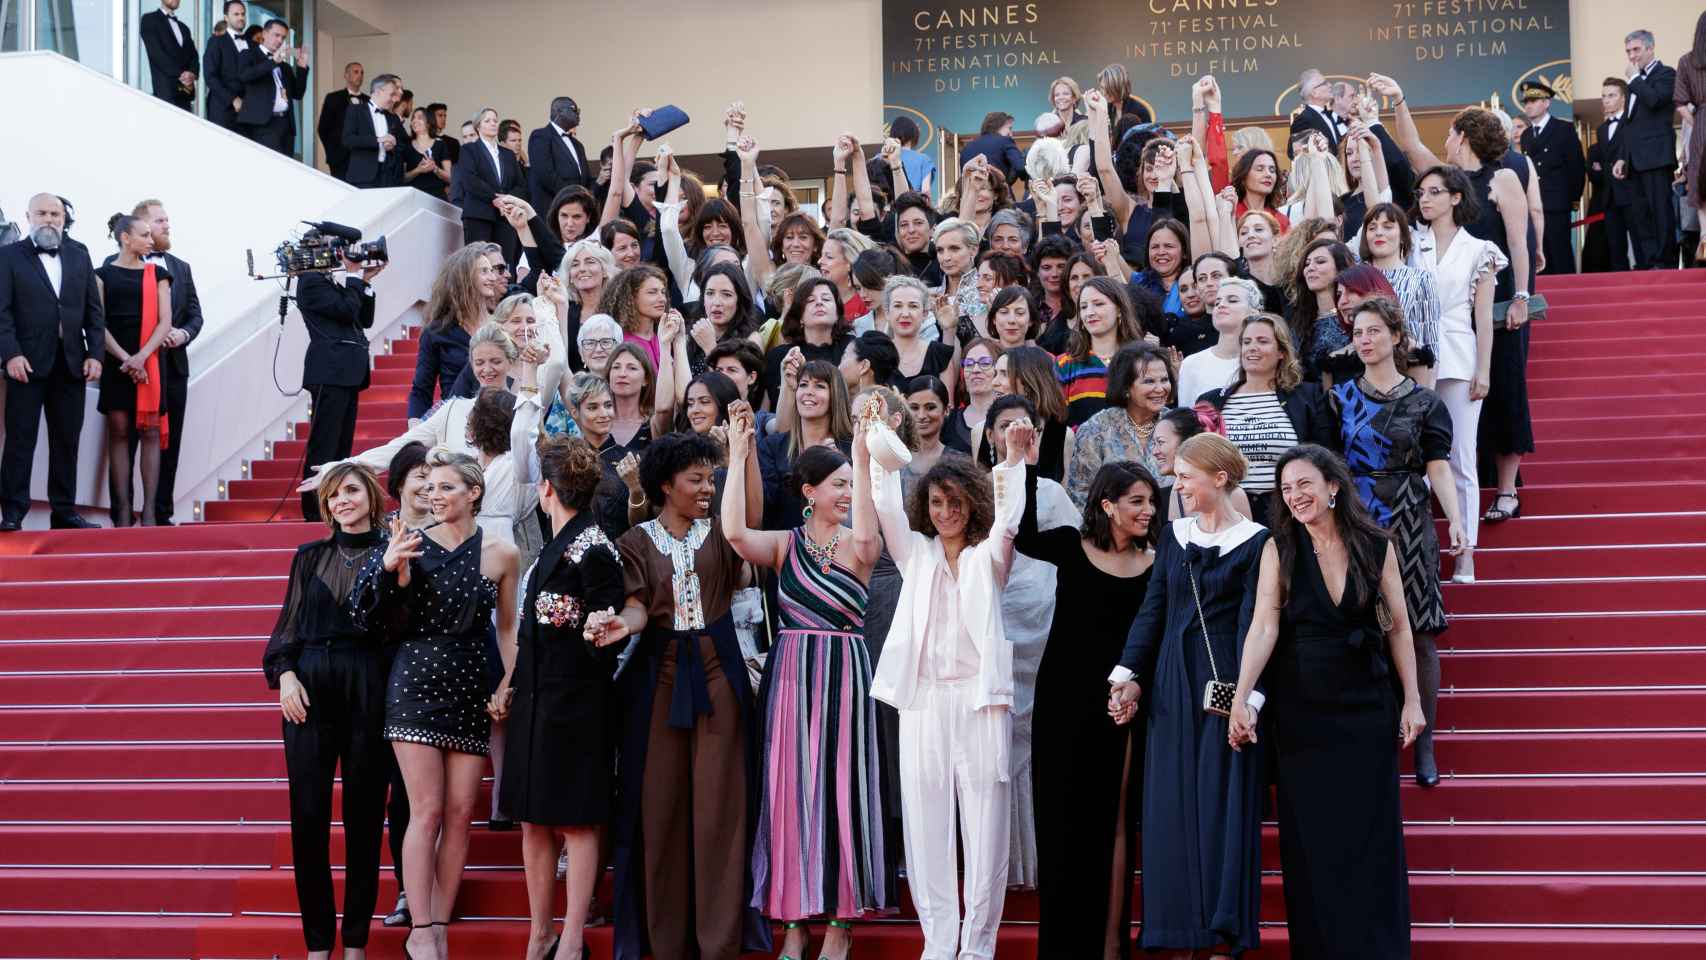 Las mujeres de la industria del cine denunciaron en 2018 la situación de desigualdad para la mujer.